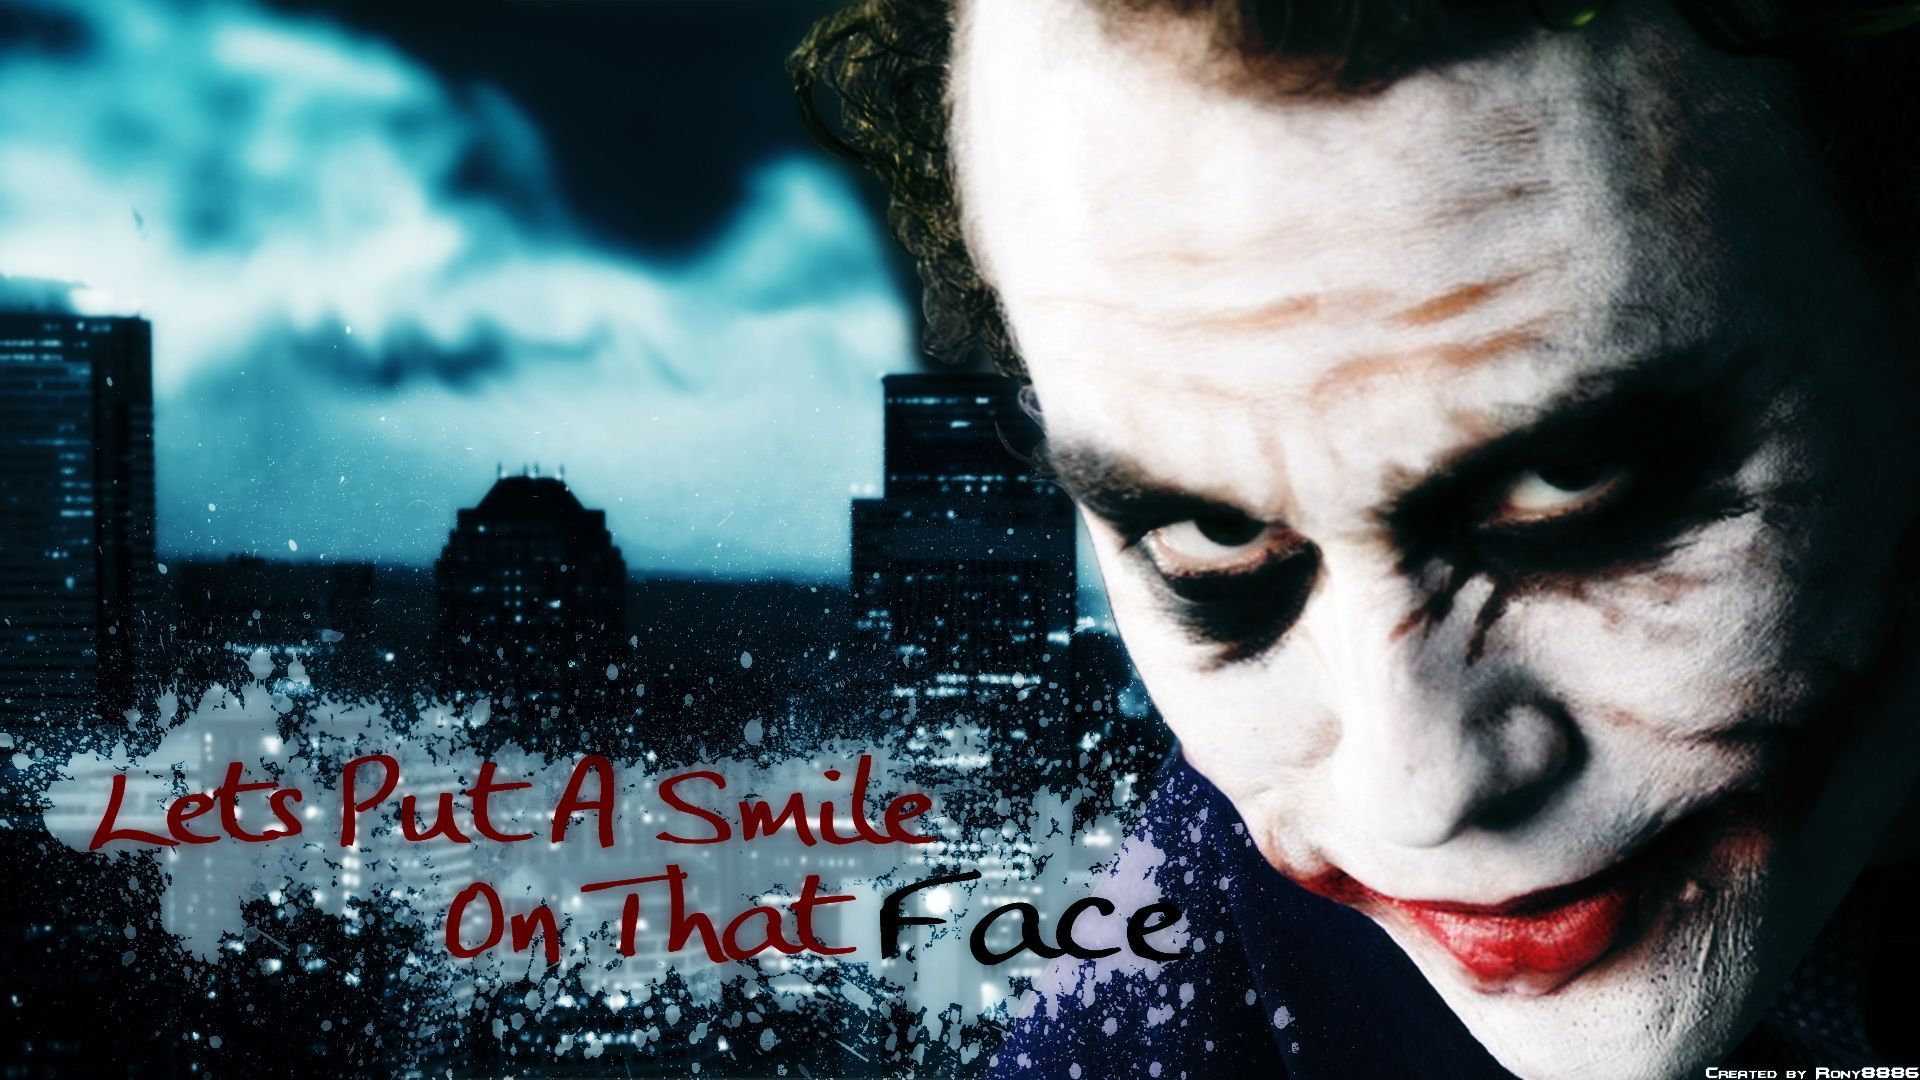 Heath Ledger Joker Quotes Wallpaper Free Heath Ledger Joker